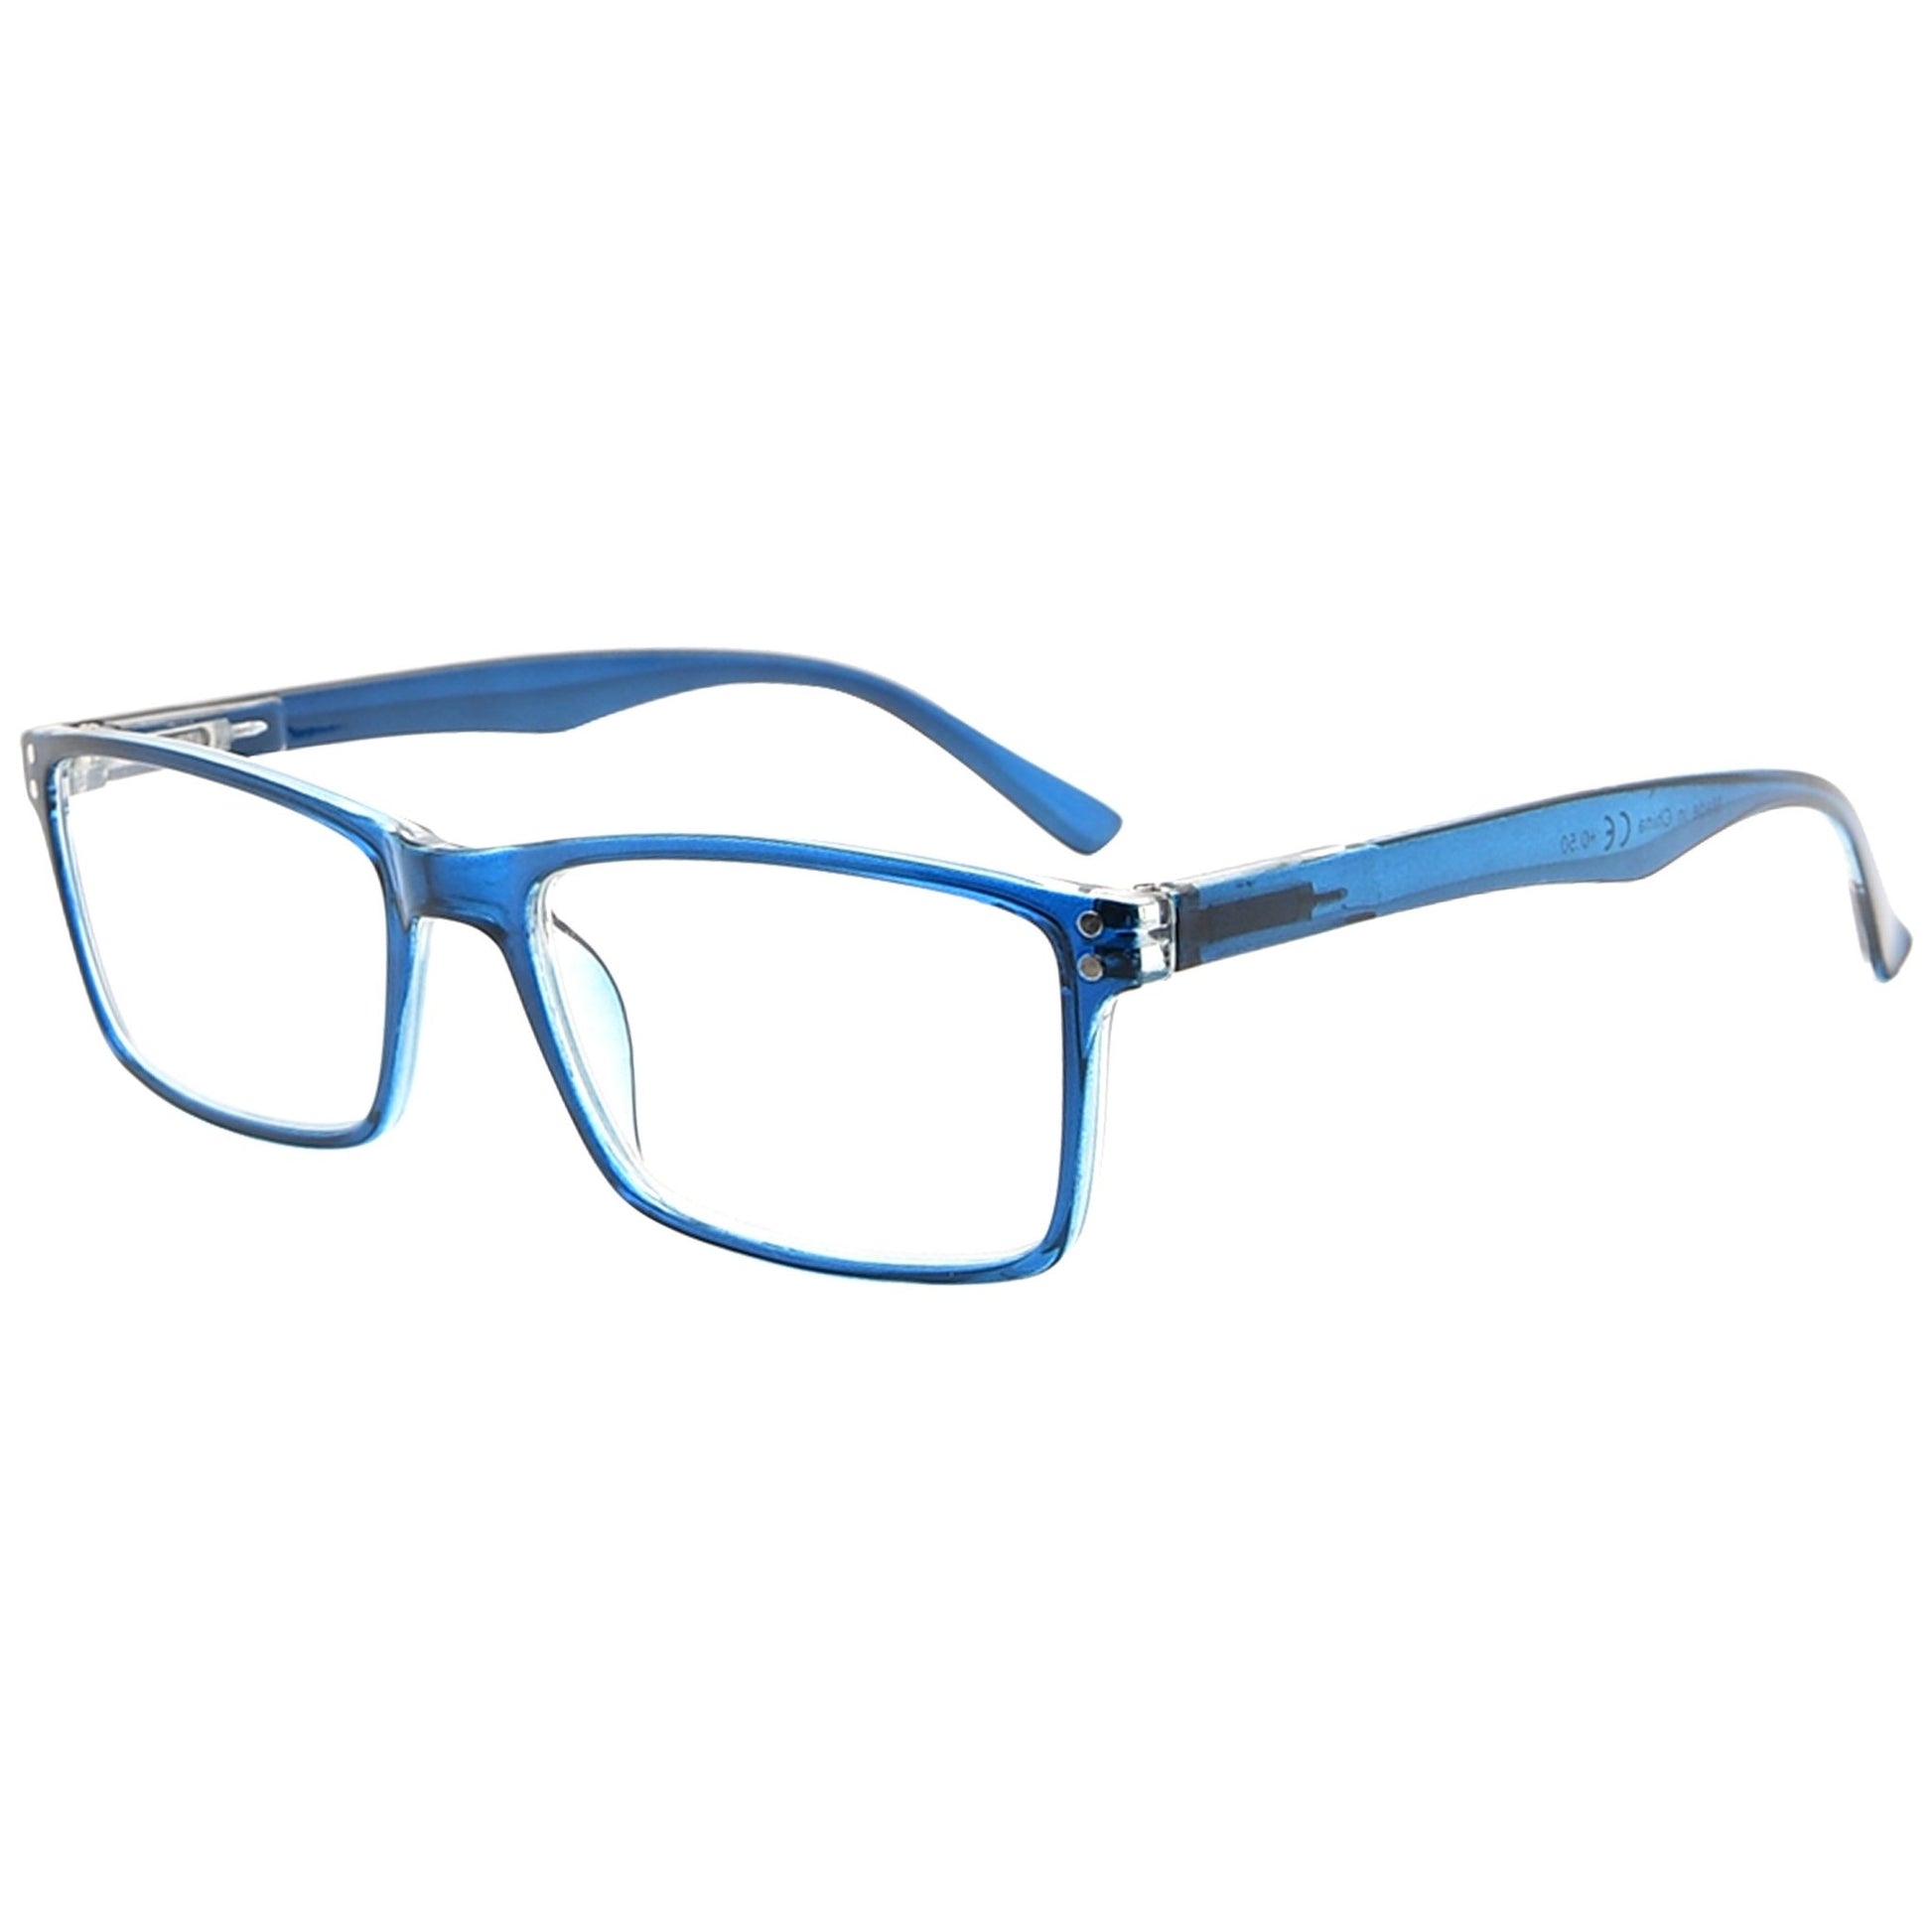 Elegant Reading Glasses Blue R802